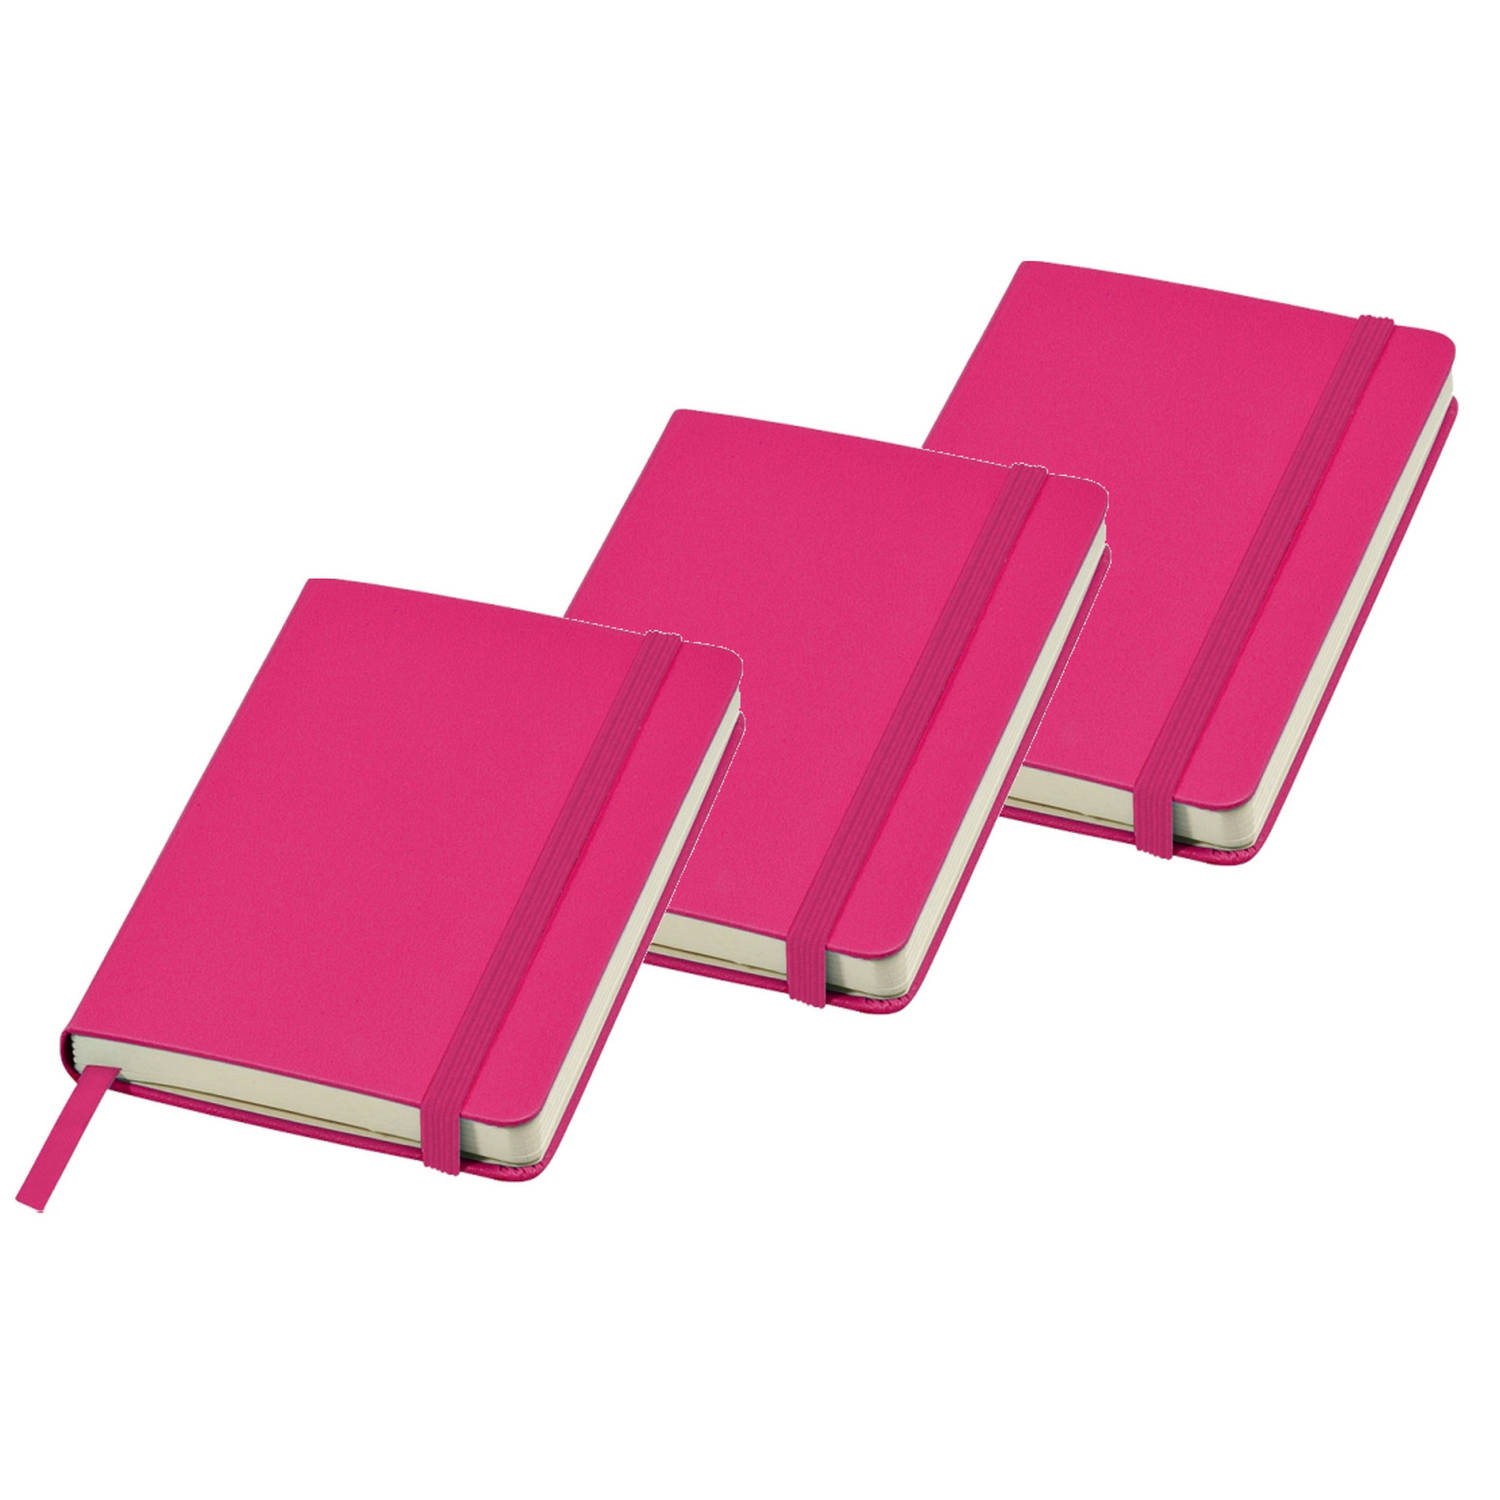 3x Stuks Roze Pocket Luxe Schriften/notitieblokjes Gelinieerd A6 Formaat - Notitieboek